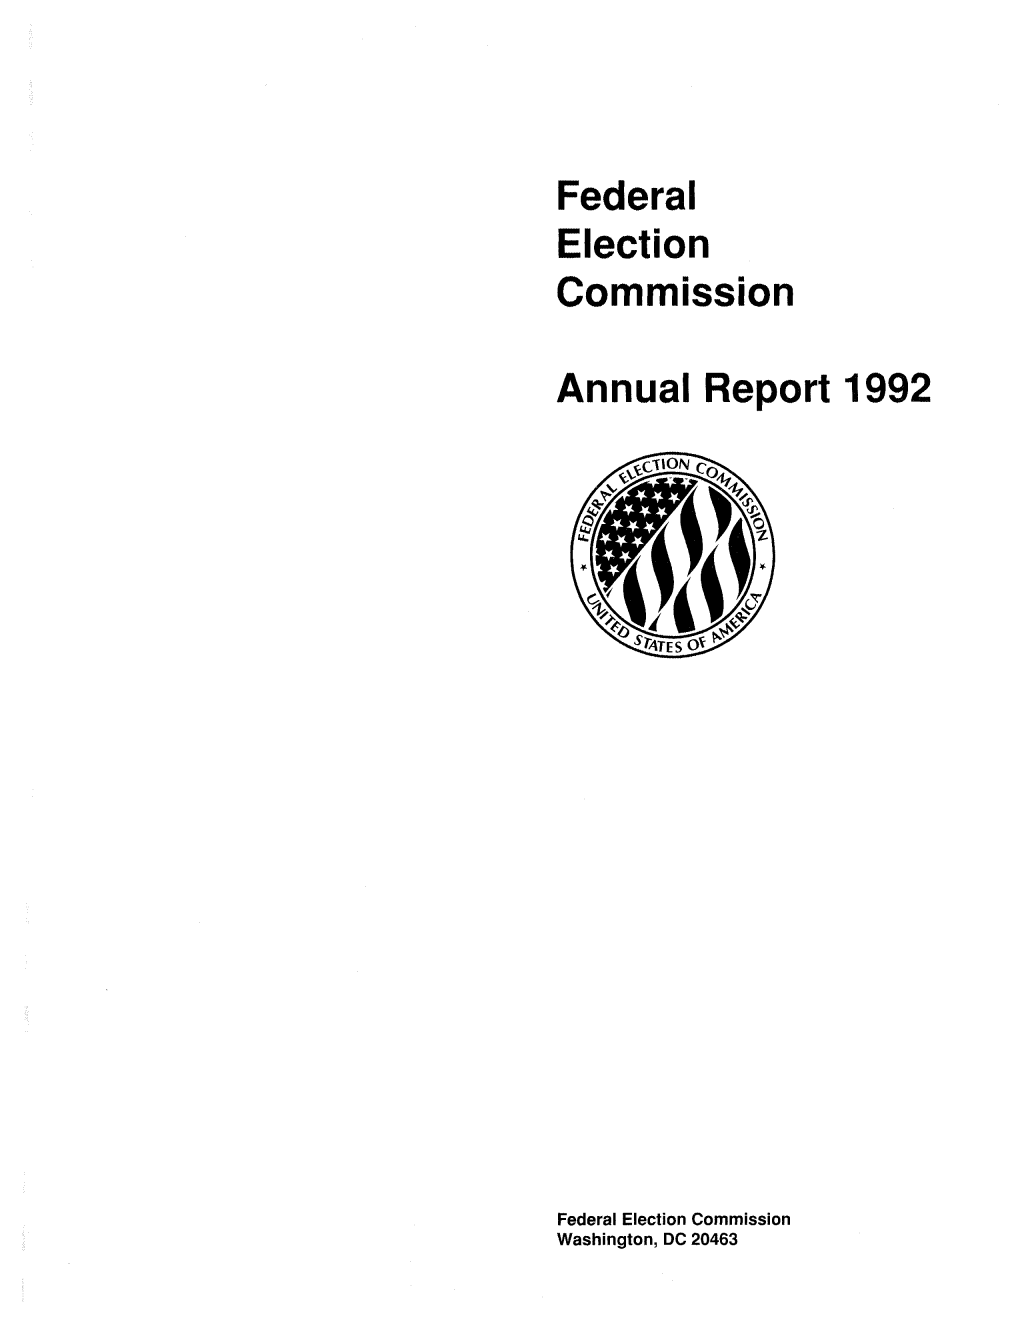 FEC Annual Report 1992